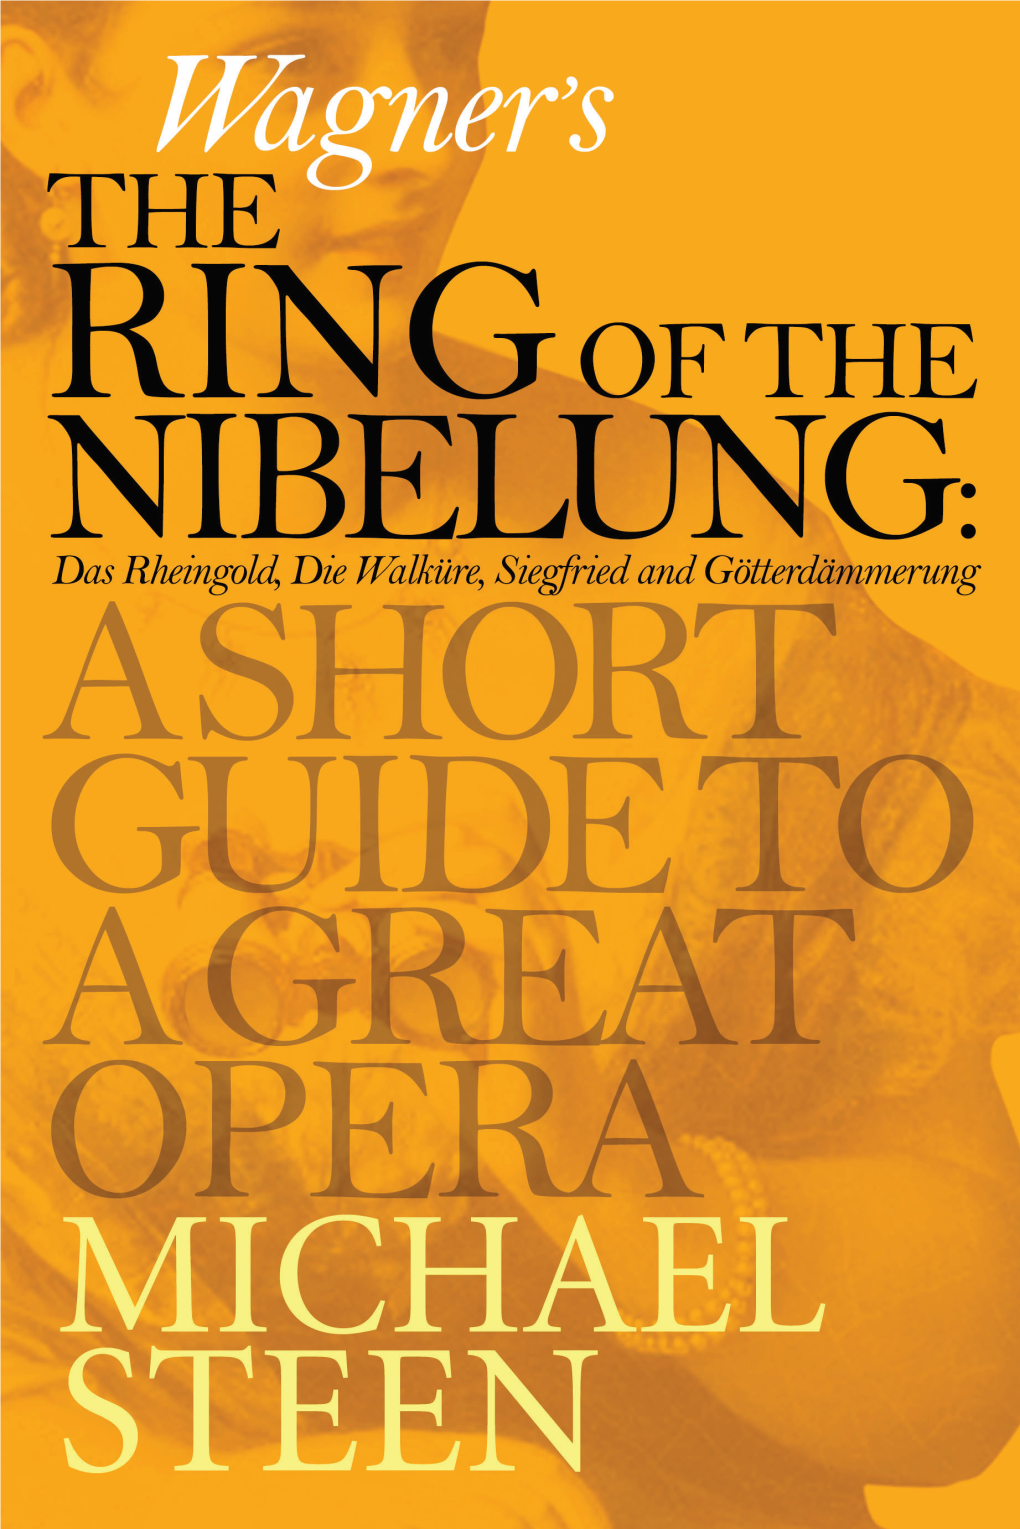 Das Rheingold: Wagner’S Prelude to the Ring Cycle 1 Die Walküre 31 Siegfried 51 Götterdämmerung 71